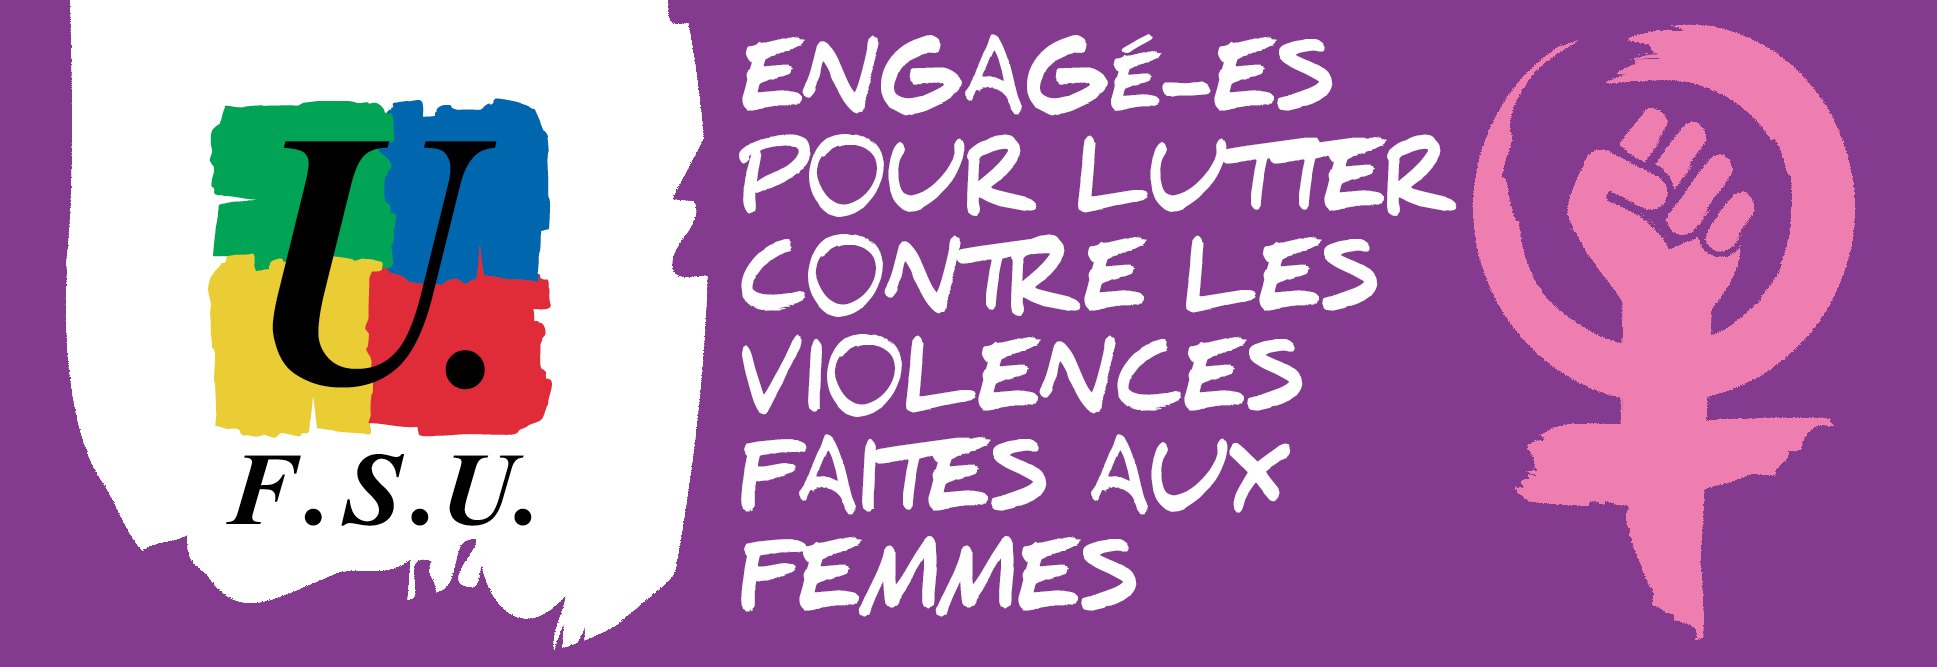 lutter contre les violences faites aux femmes